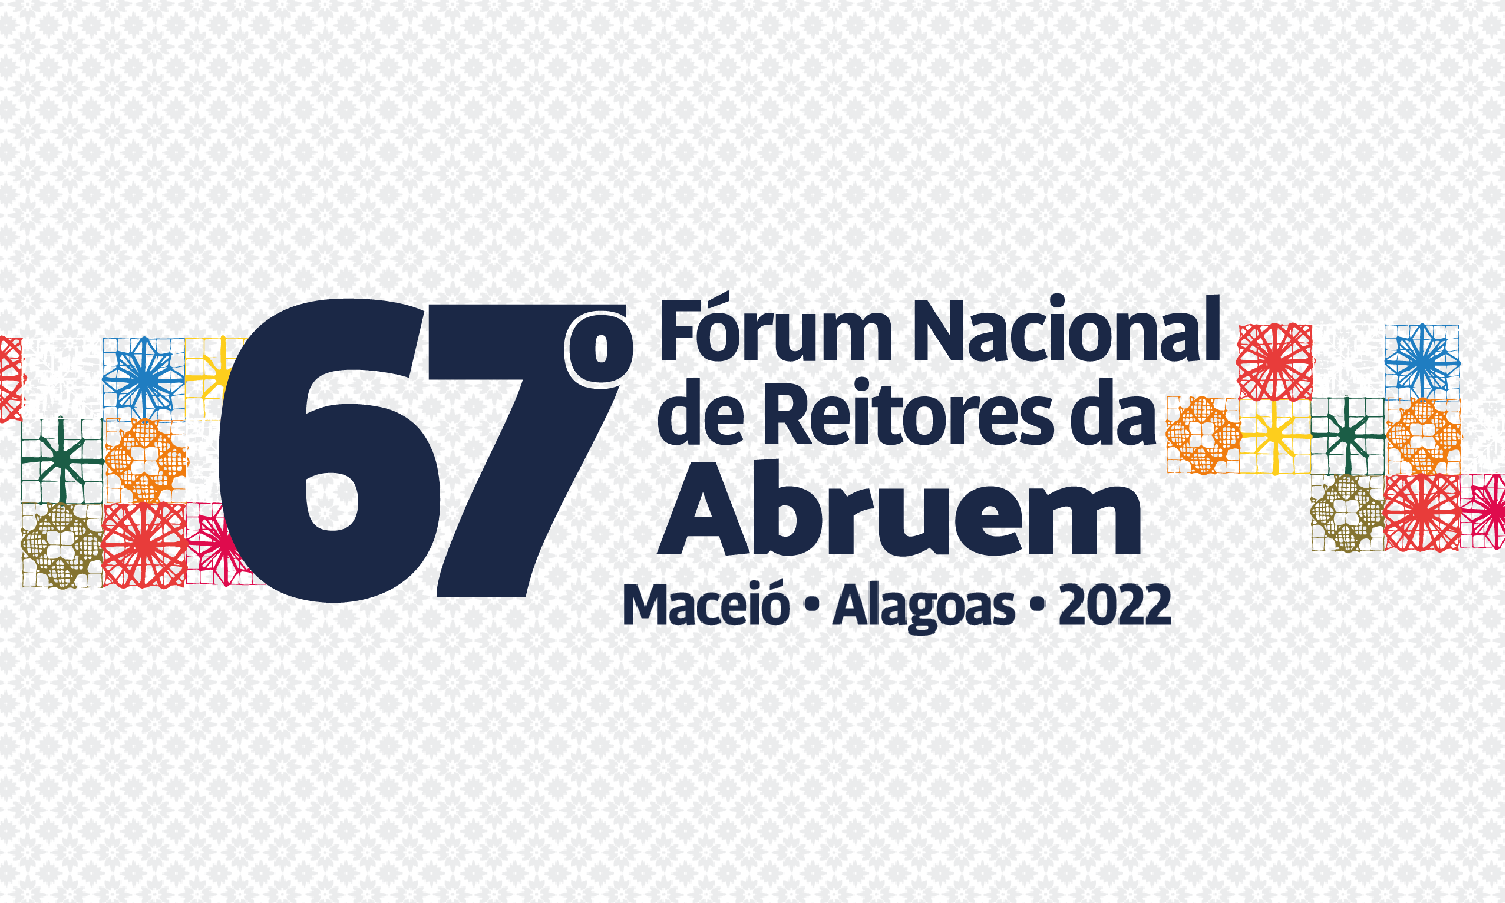 RELATÓRIO FINAL 67º FÓRUM NACIONAL DE REITORES DA ABRUEM